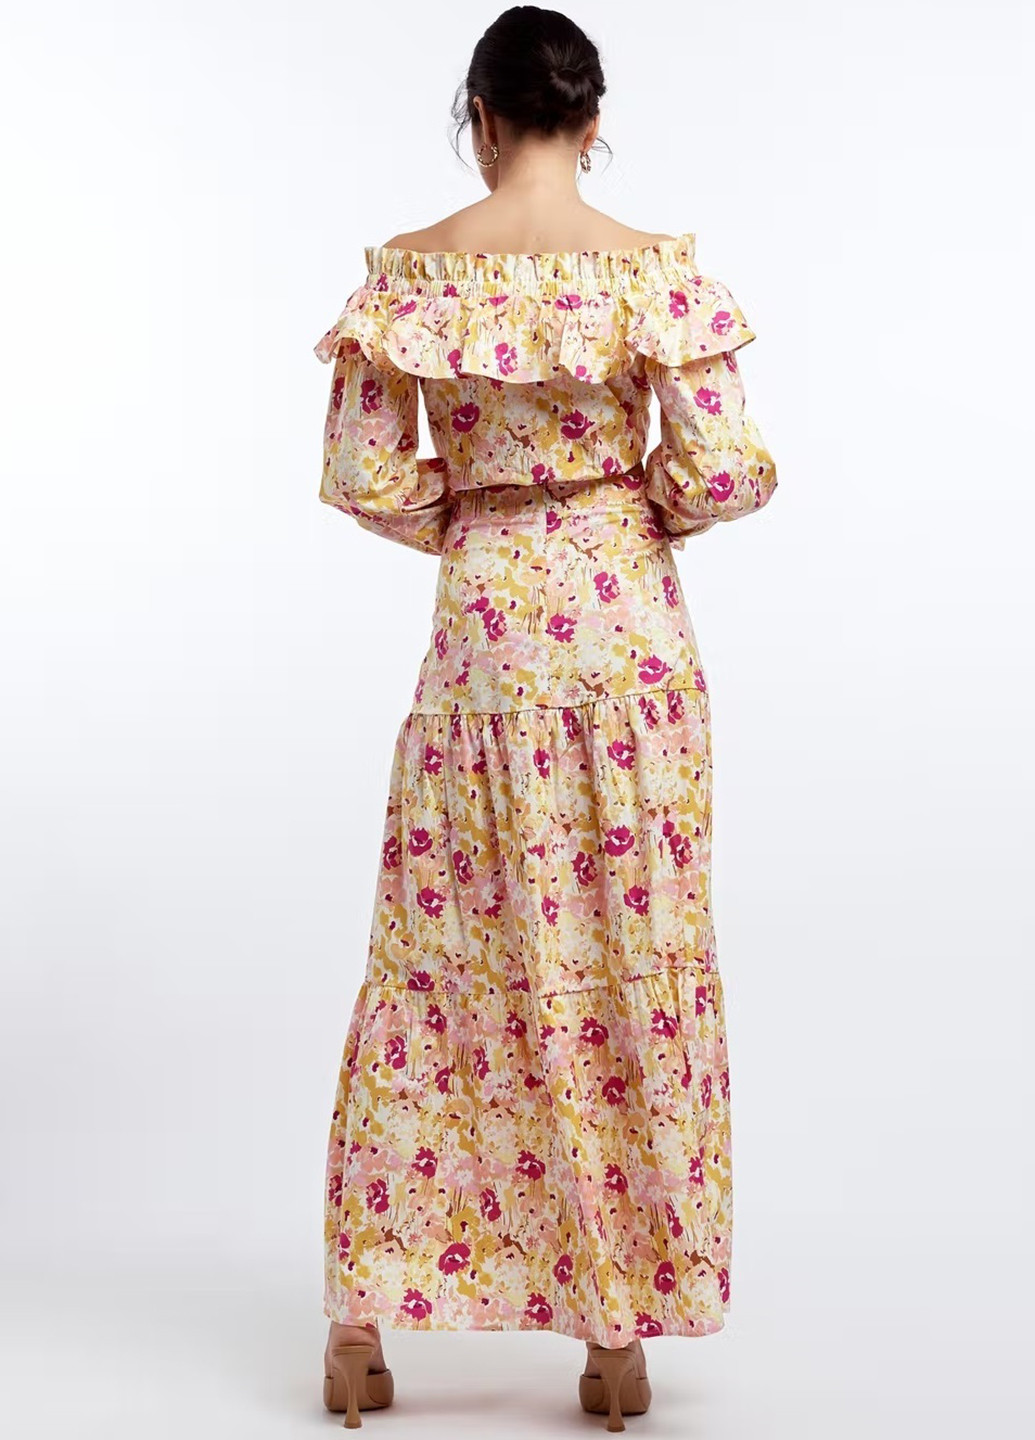 Разноцветная кэжуал цветочной расцветки юбка Gina Tricot а-силуэта (трапеция)